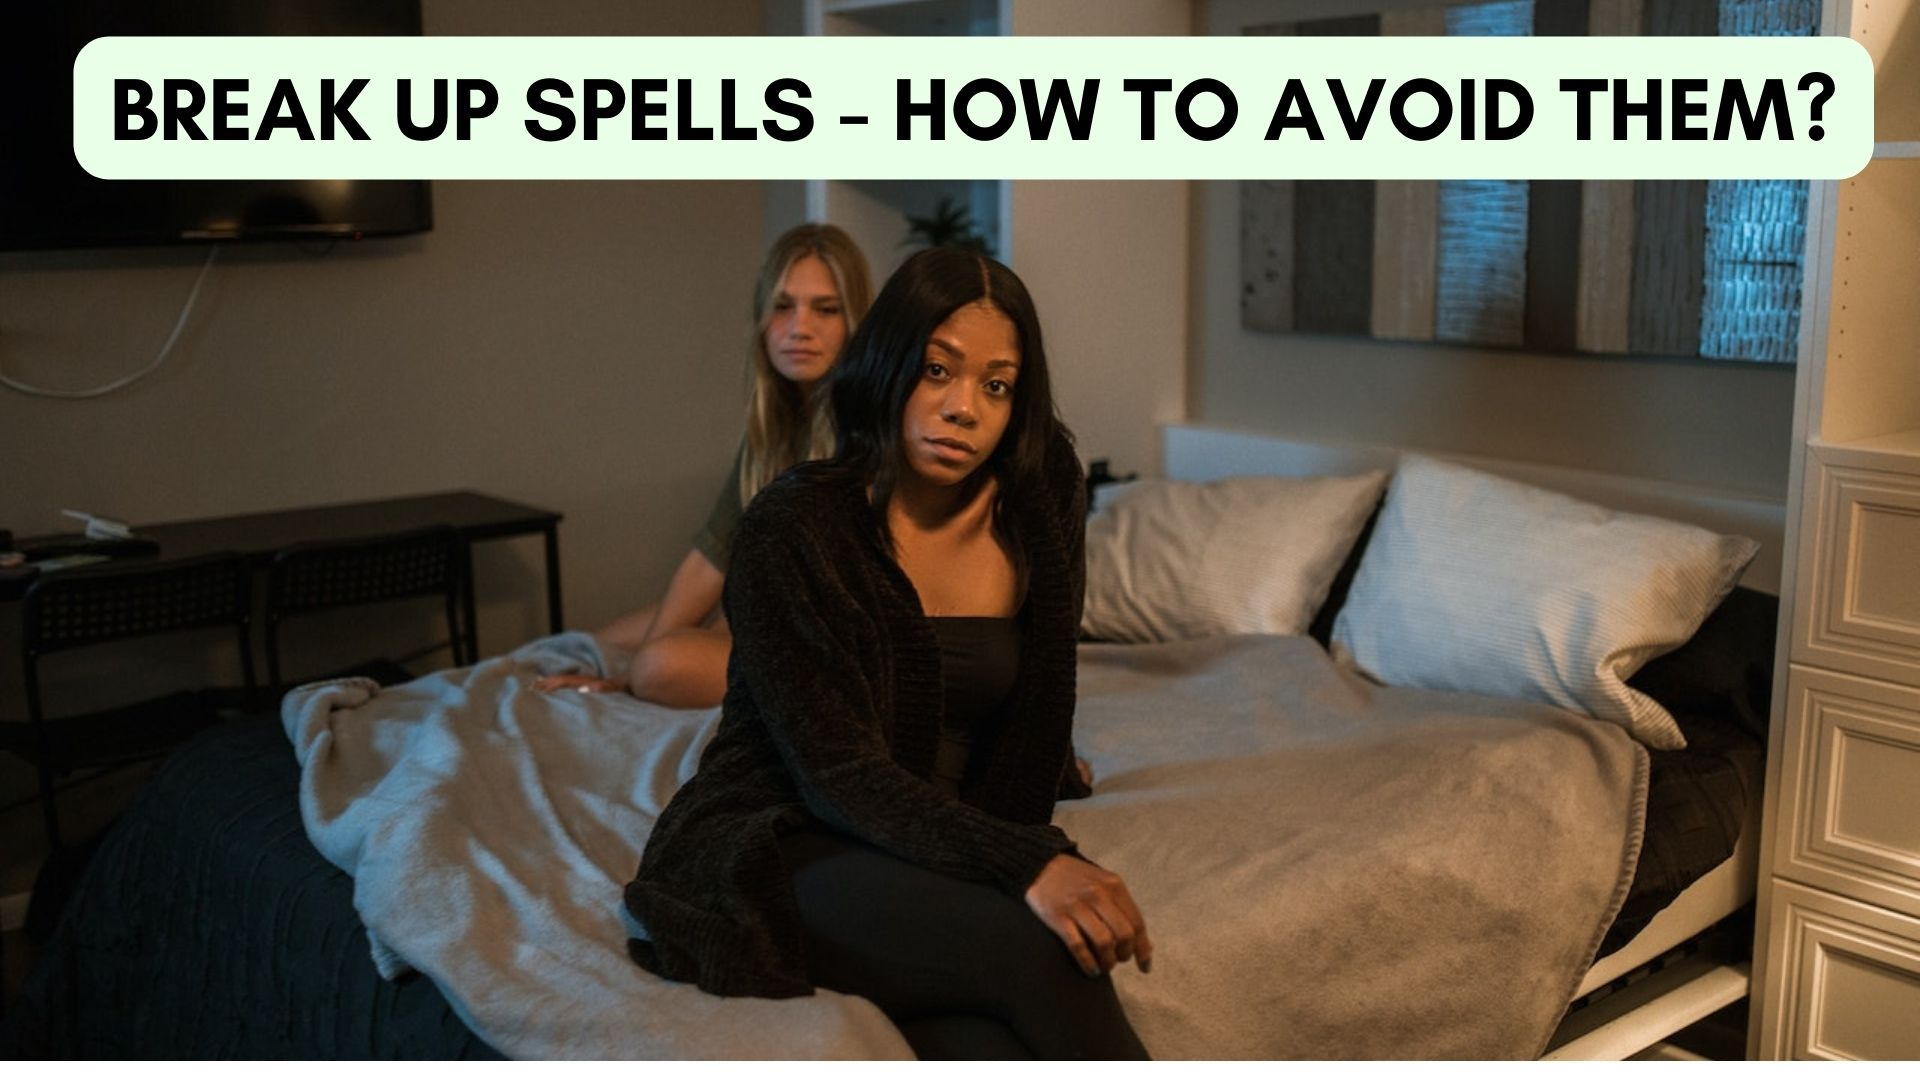 Break Up Spells - How To Avoid Them?